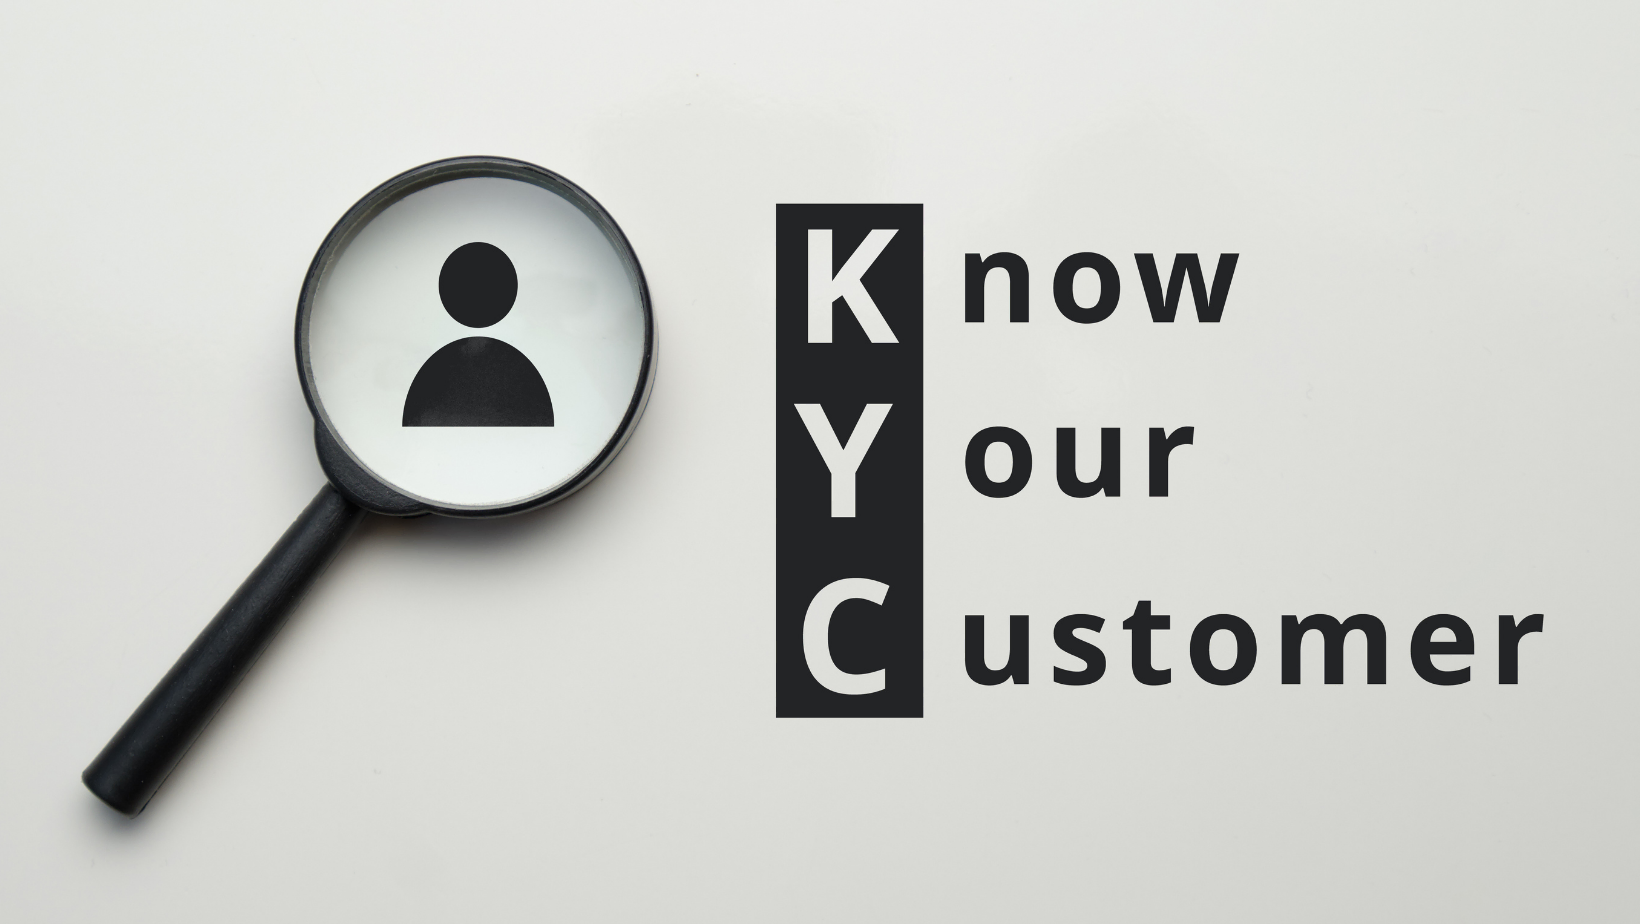 KYC Cunoaște-ți clientul